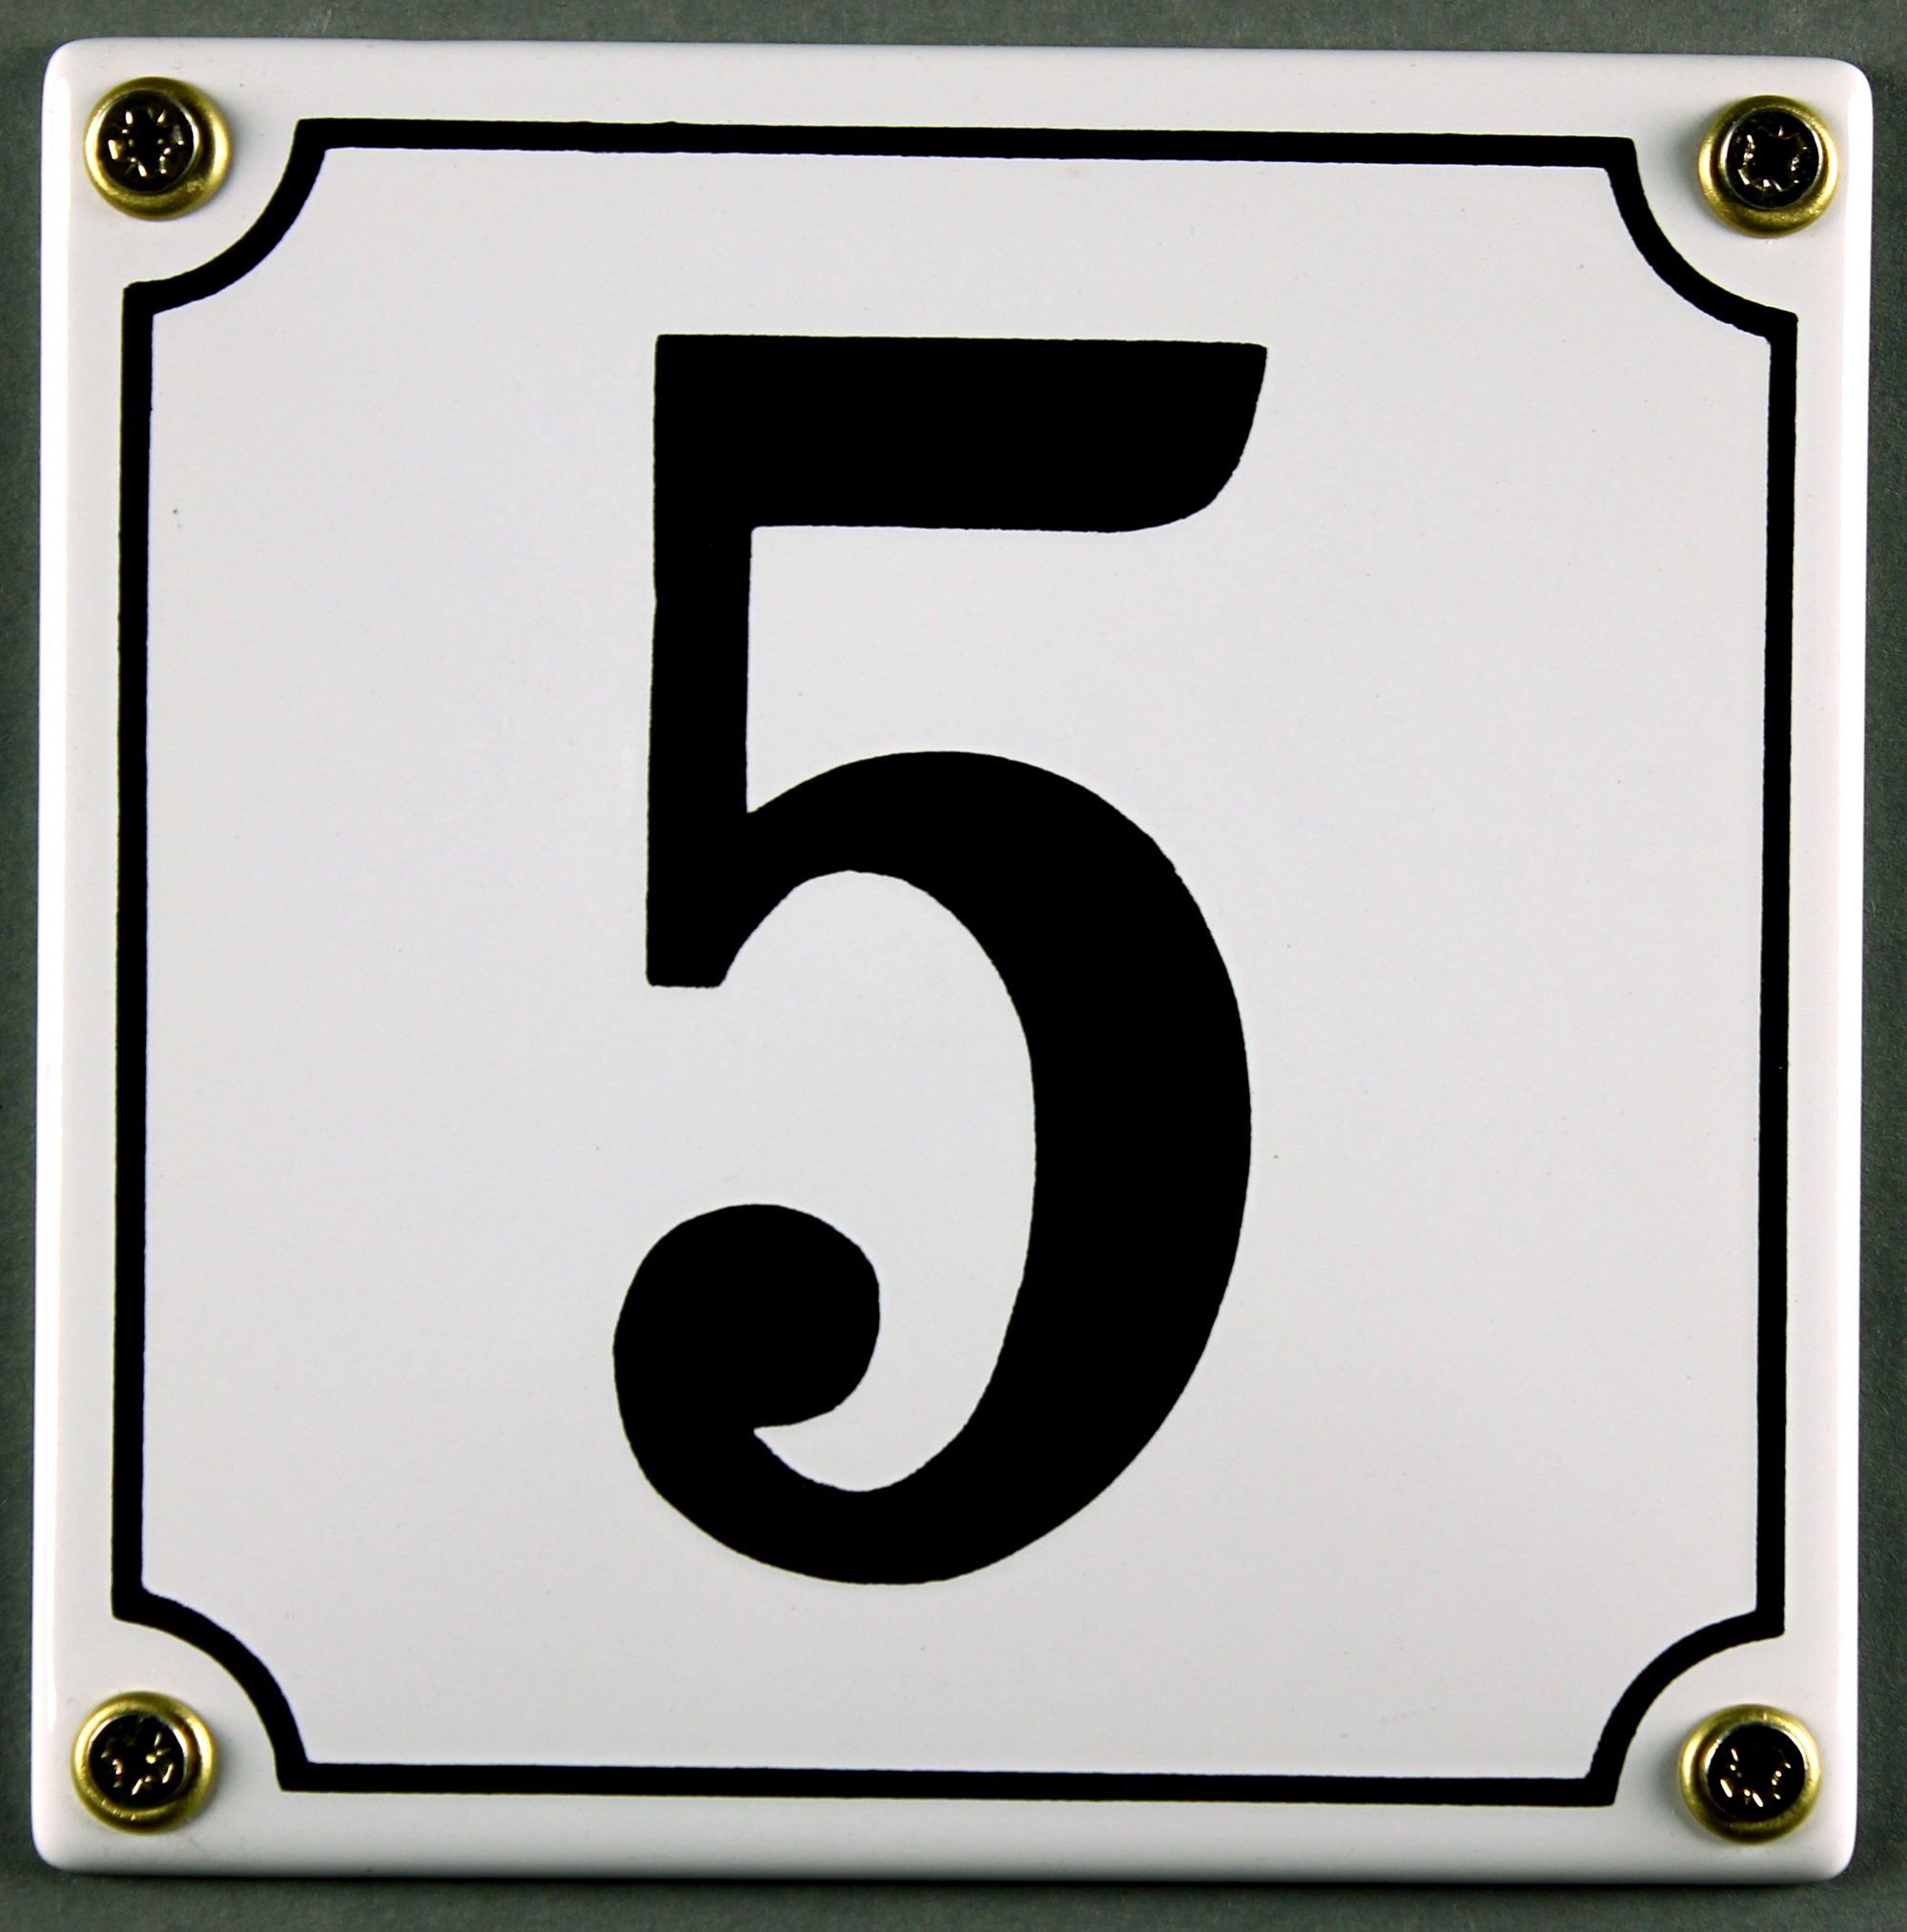 Hausnummernschild 5 weiß 12x12 cm sofort lieferbar Schild Emaille  Hausnummer Haus Nummer Zahl Ziffer, Standard Hausnummern 1 bis 30, Hausnummern Emaille, Emaille Schilder, Schilder